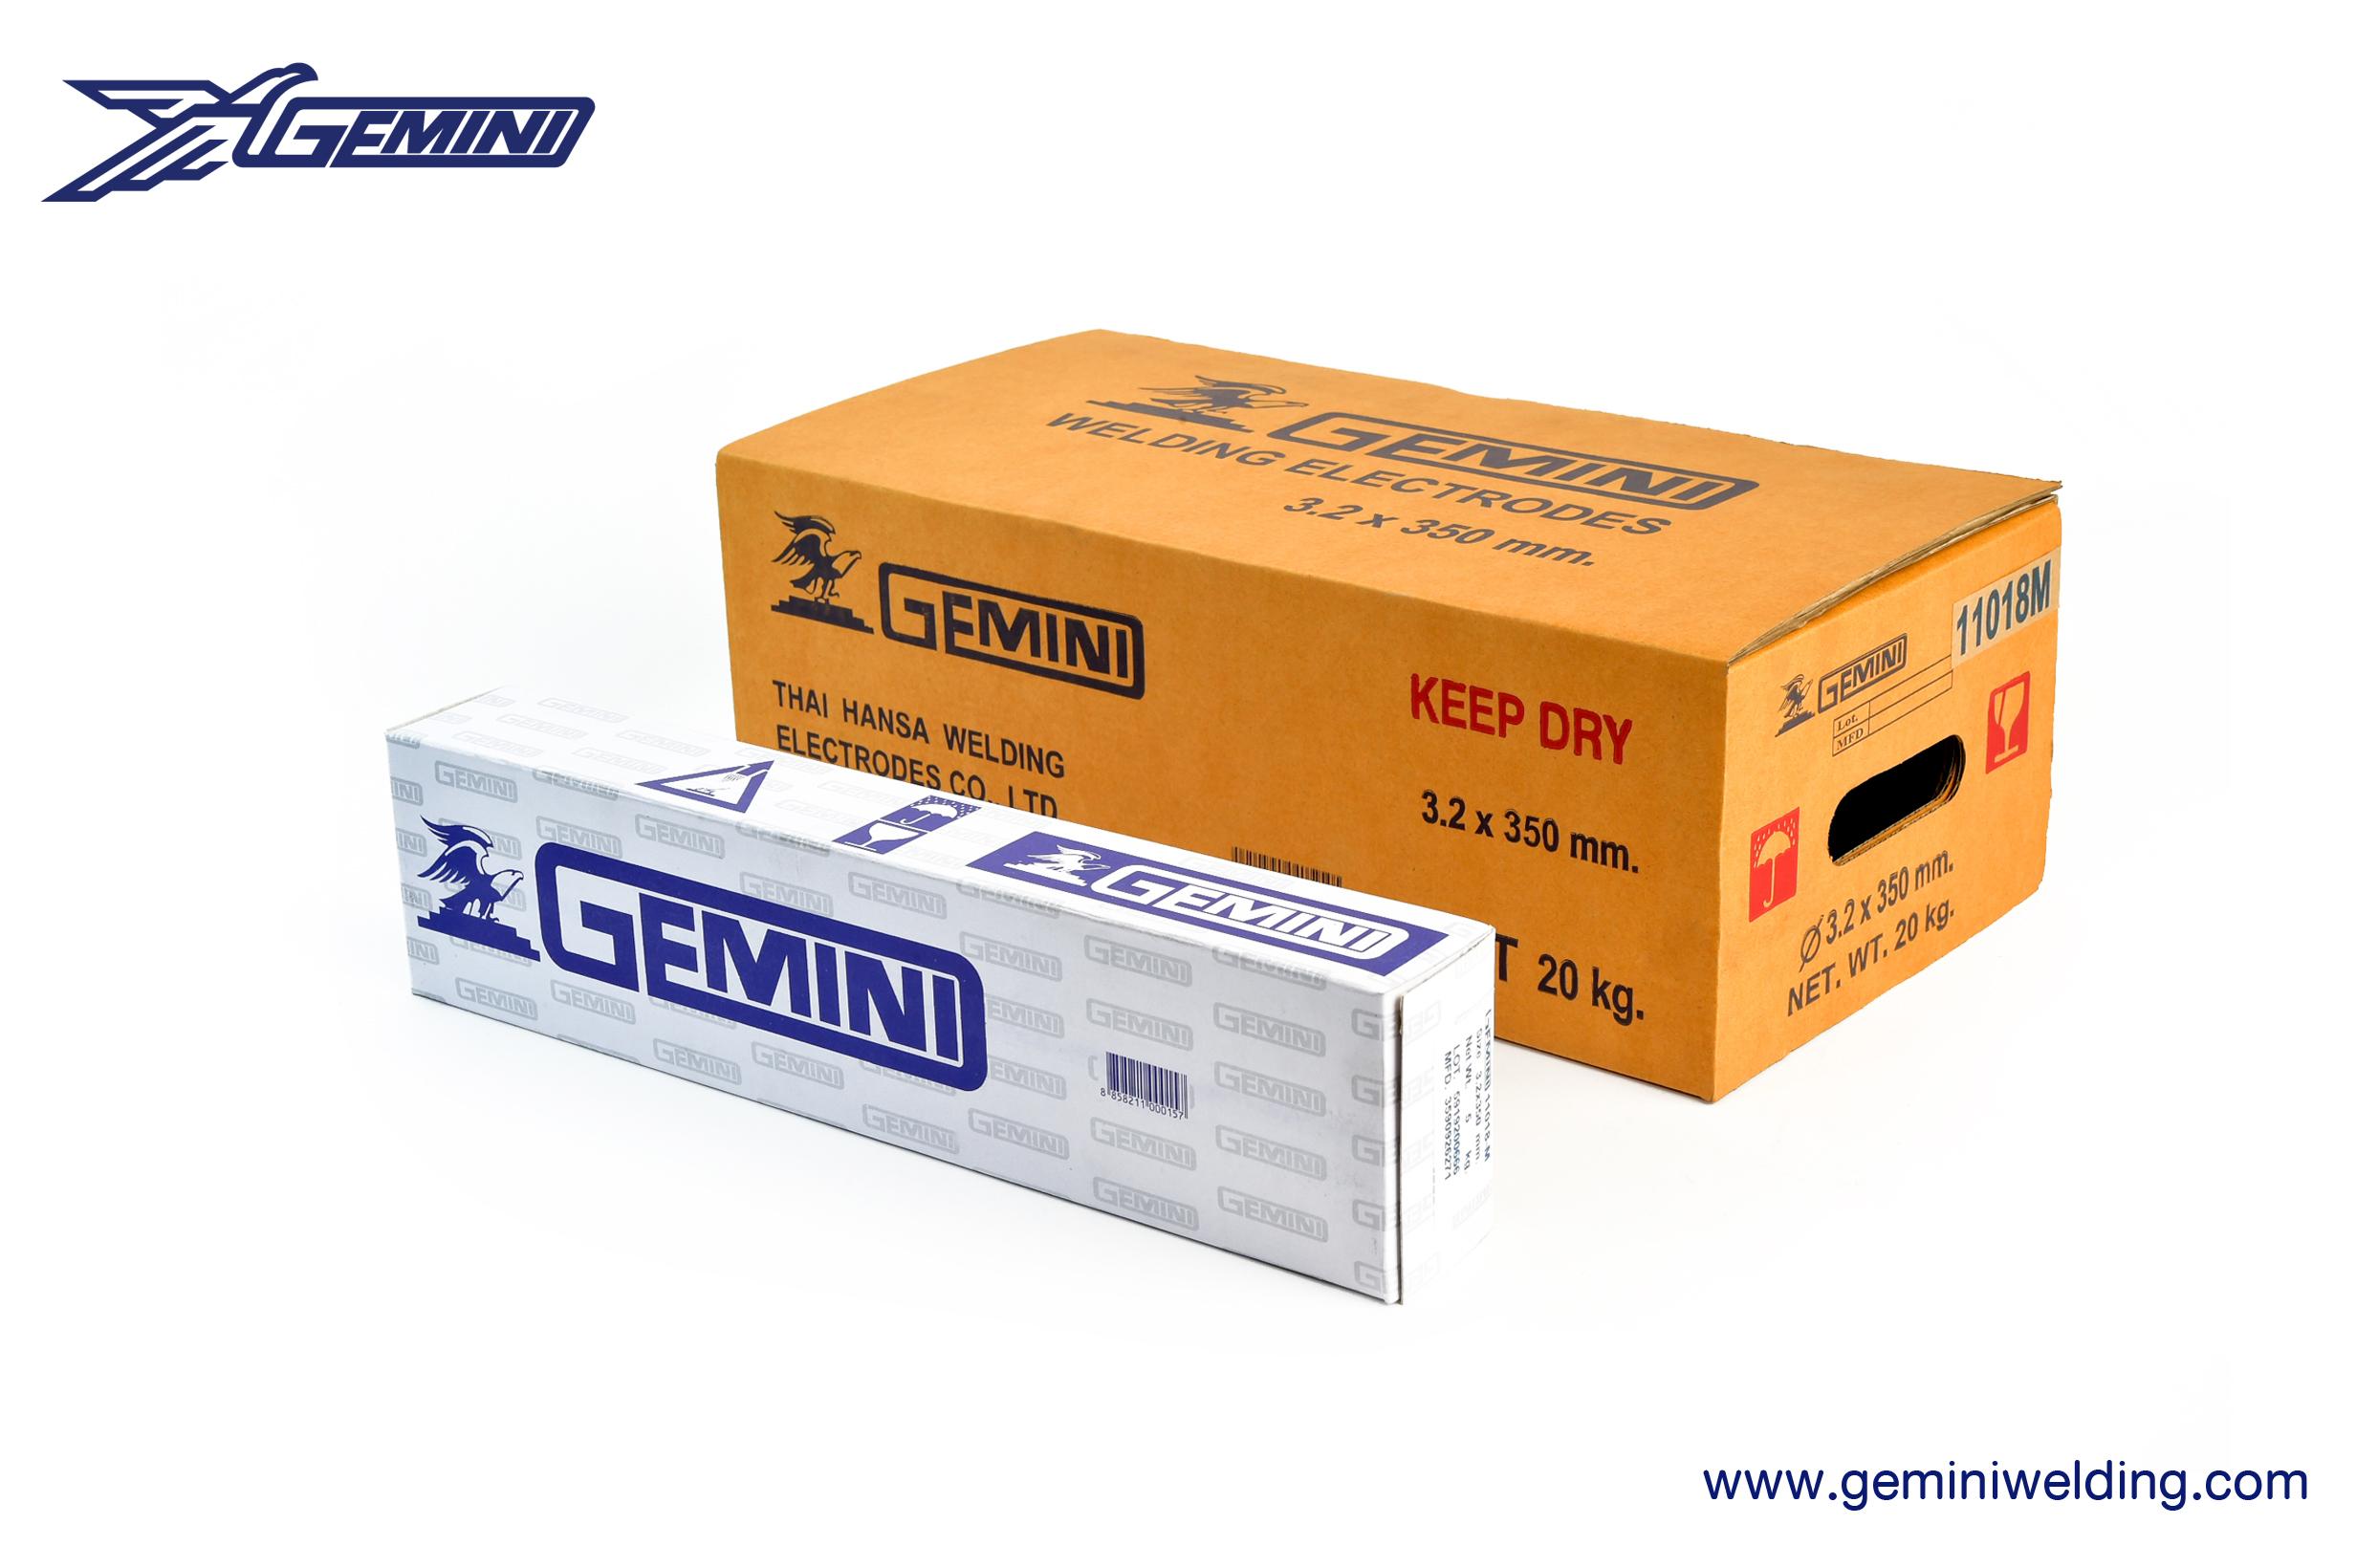 Product Gemini 11018-M - Gemini Welding image